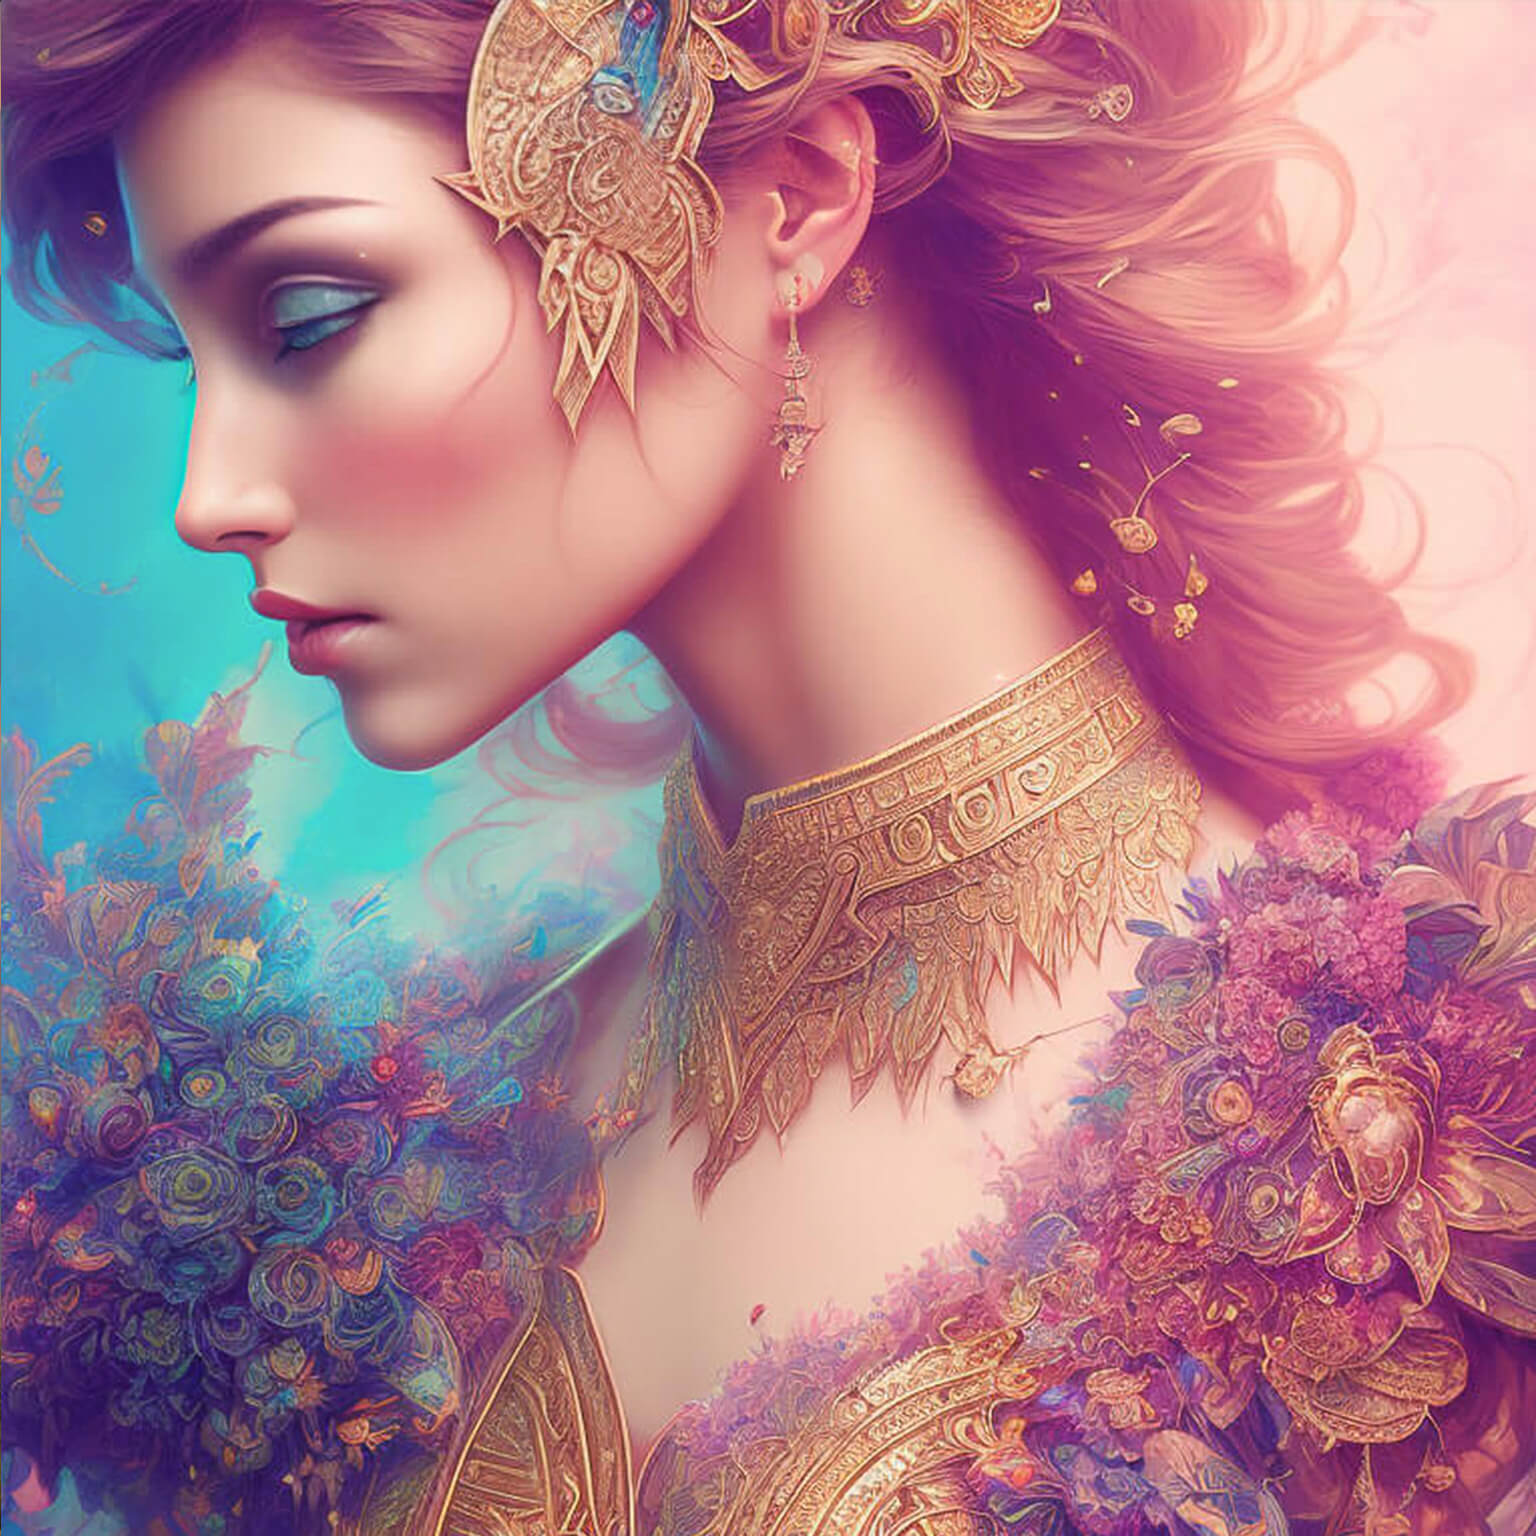 Ein KI Bild von einer Krieger Prinzessin mit Blumenschmuck